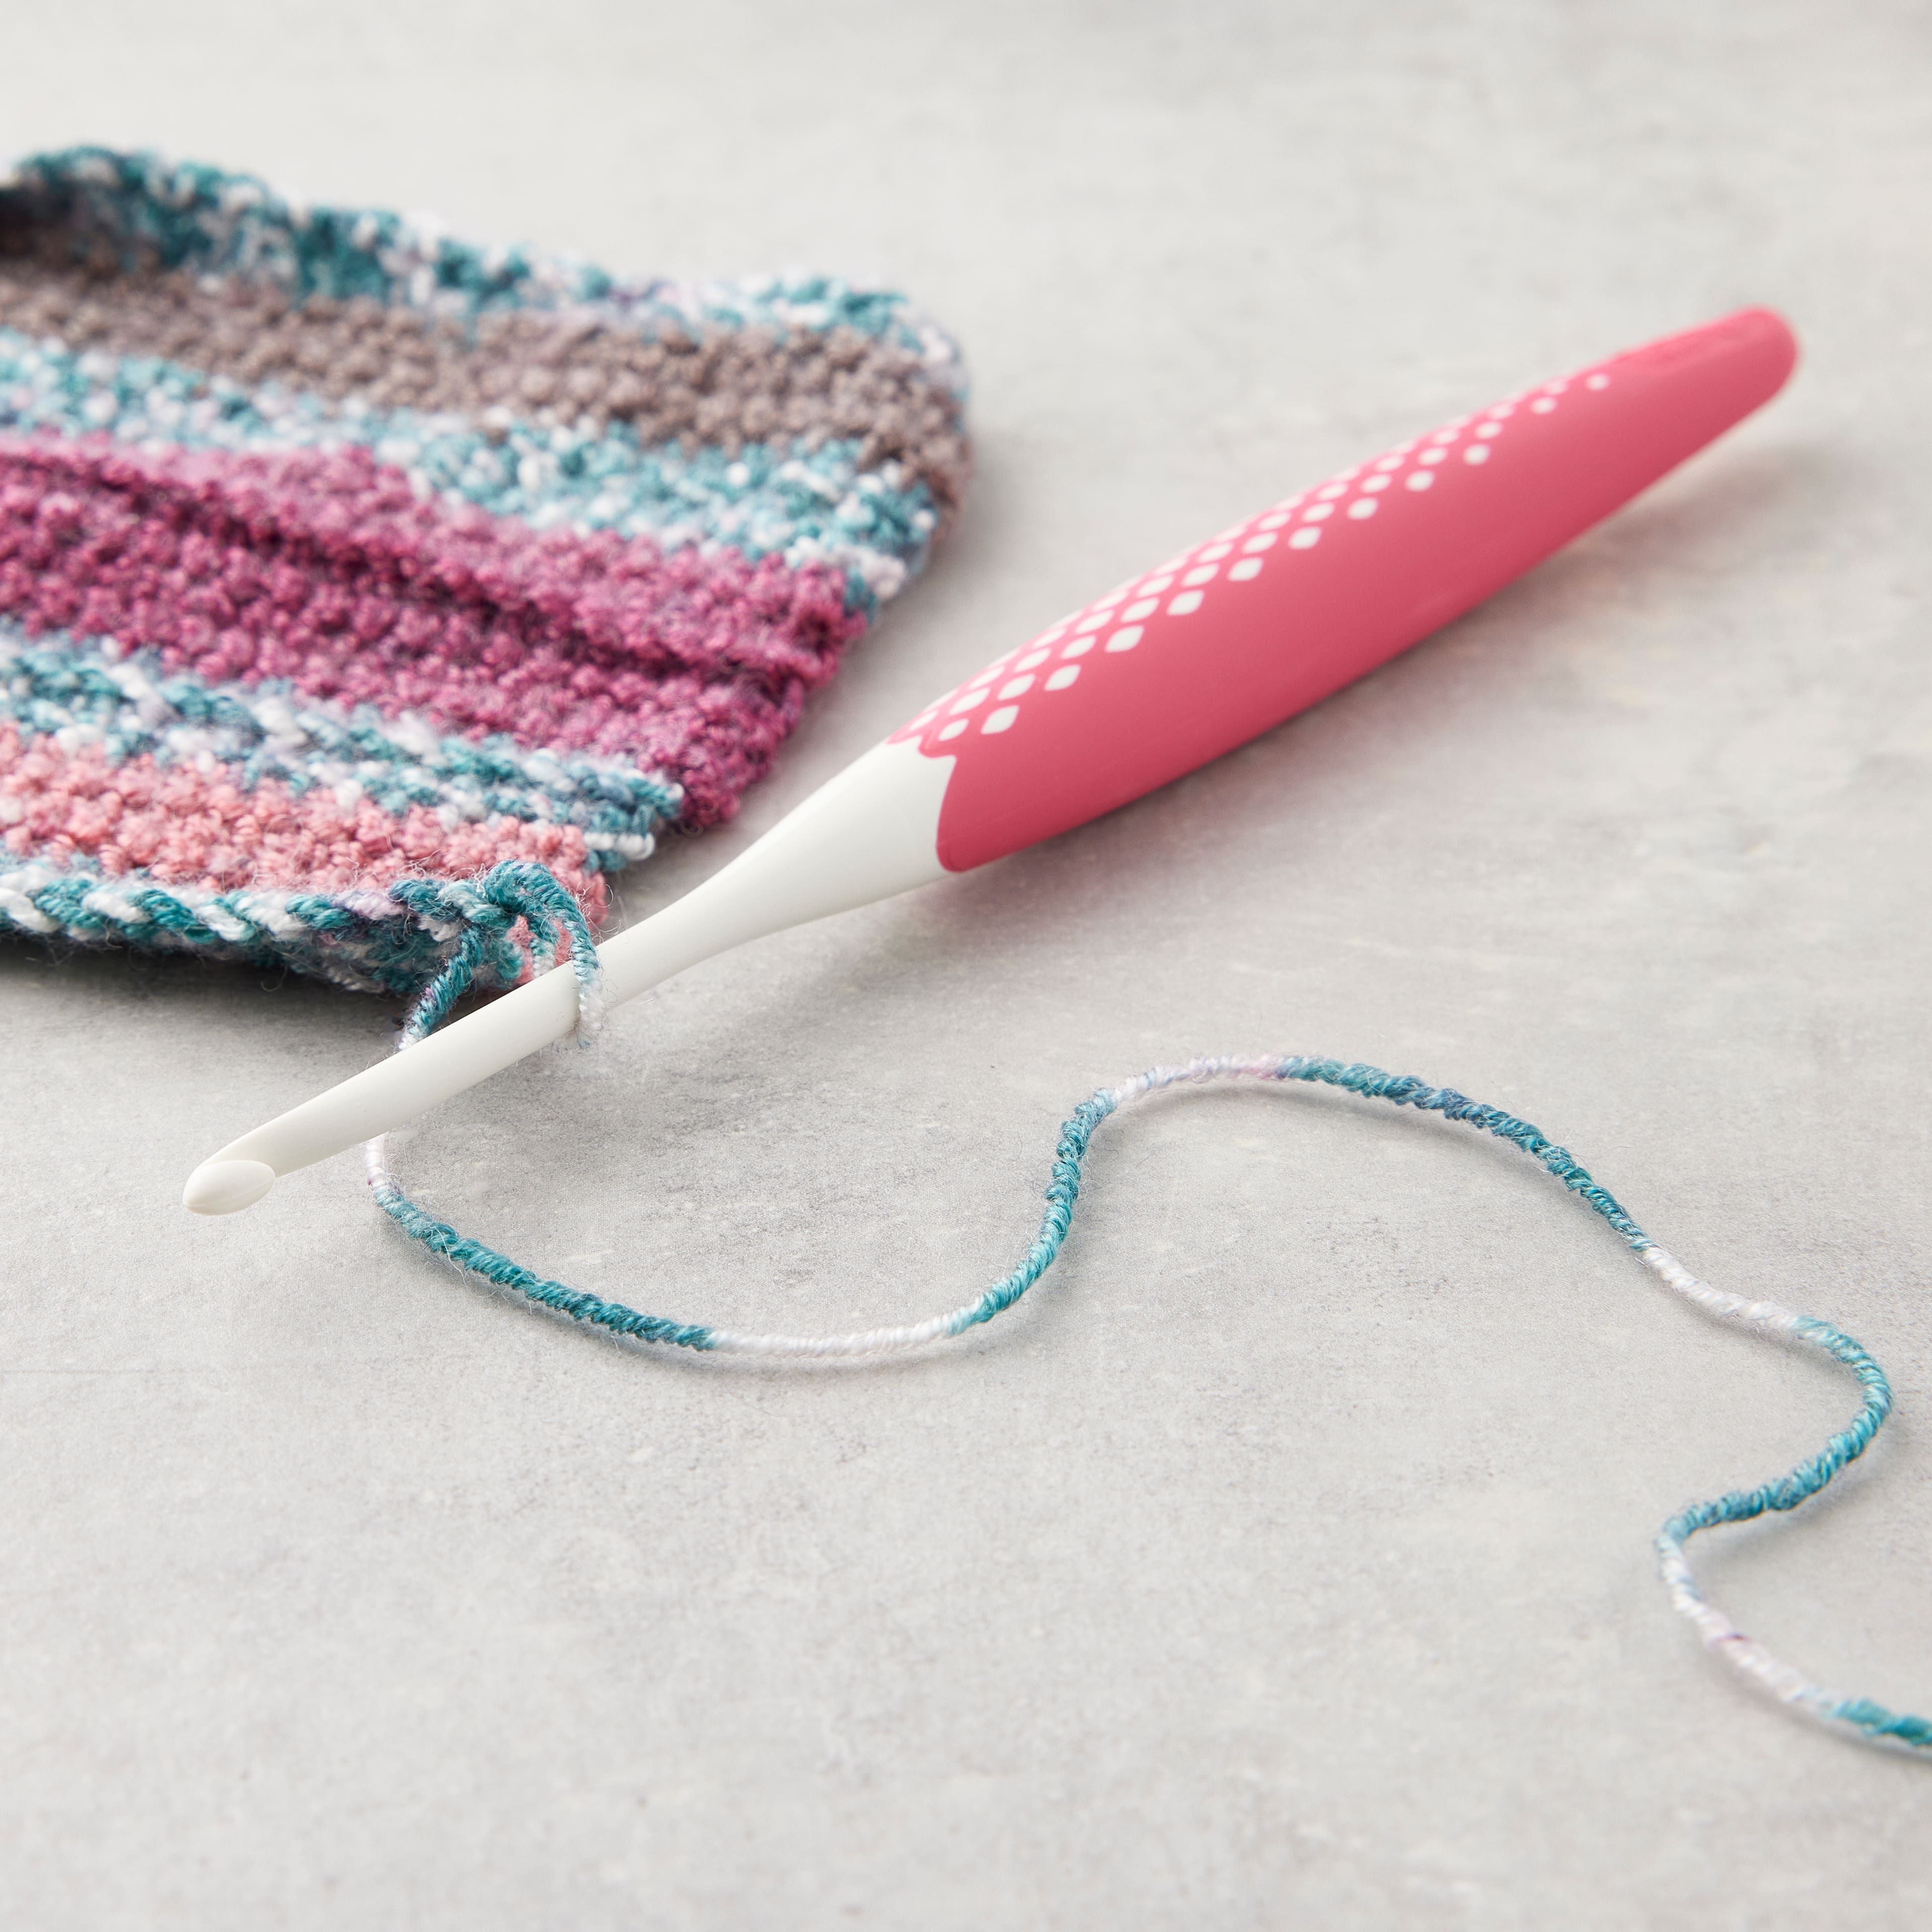 Prym Ergonomic Coloured Crochet Hooks – The Knitting Loft